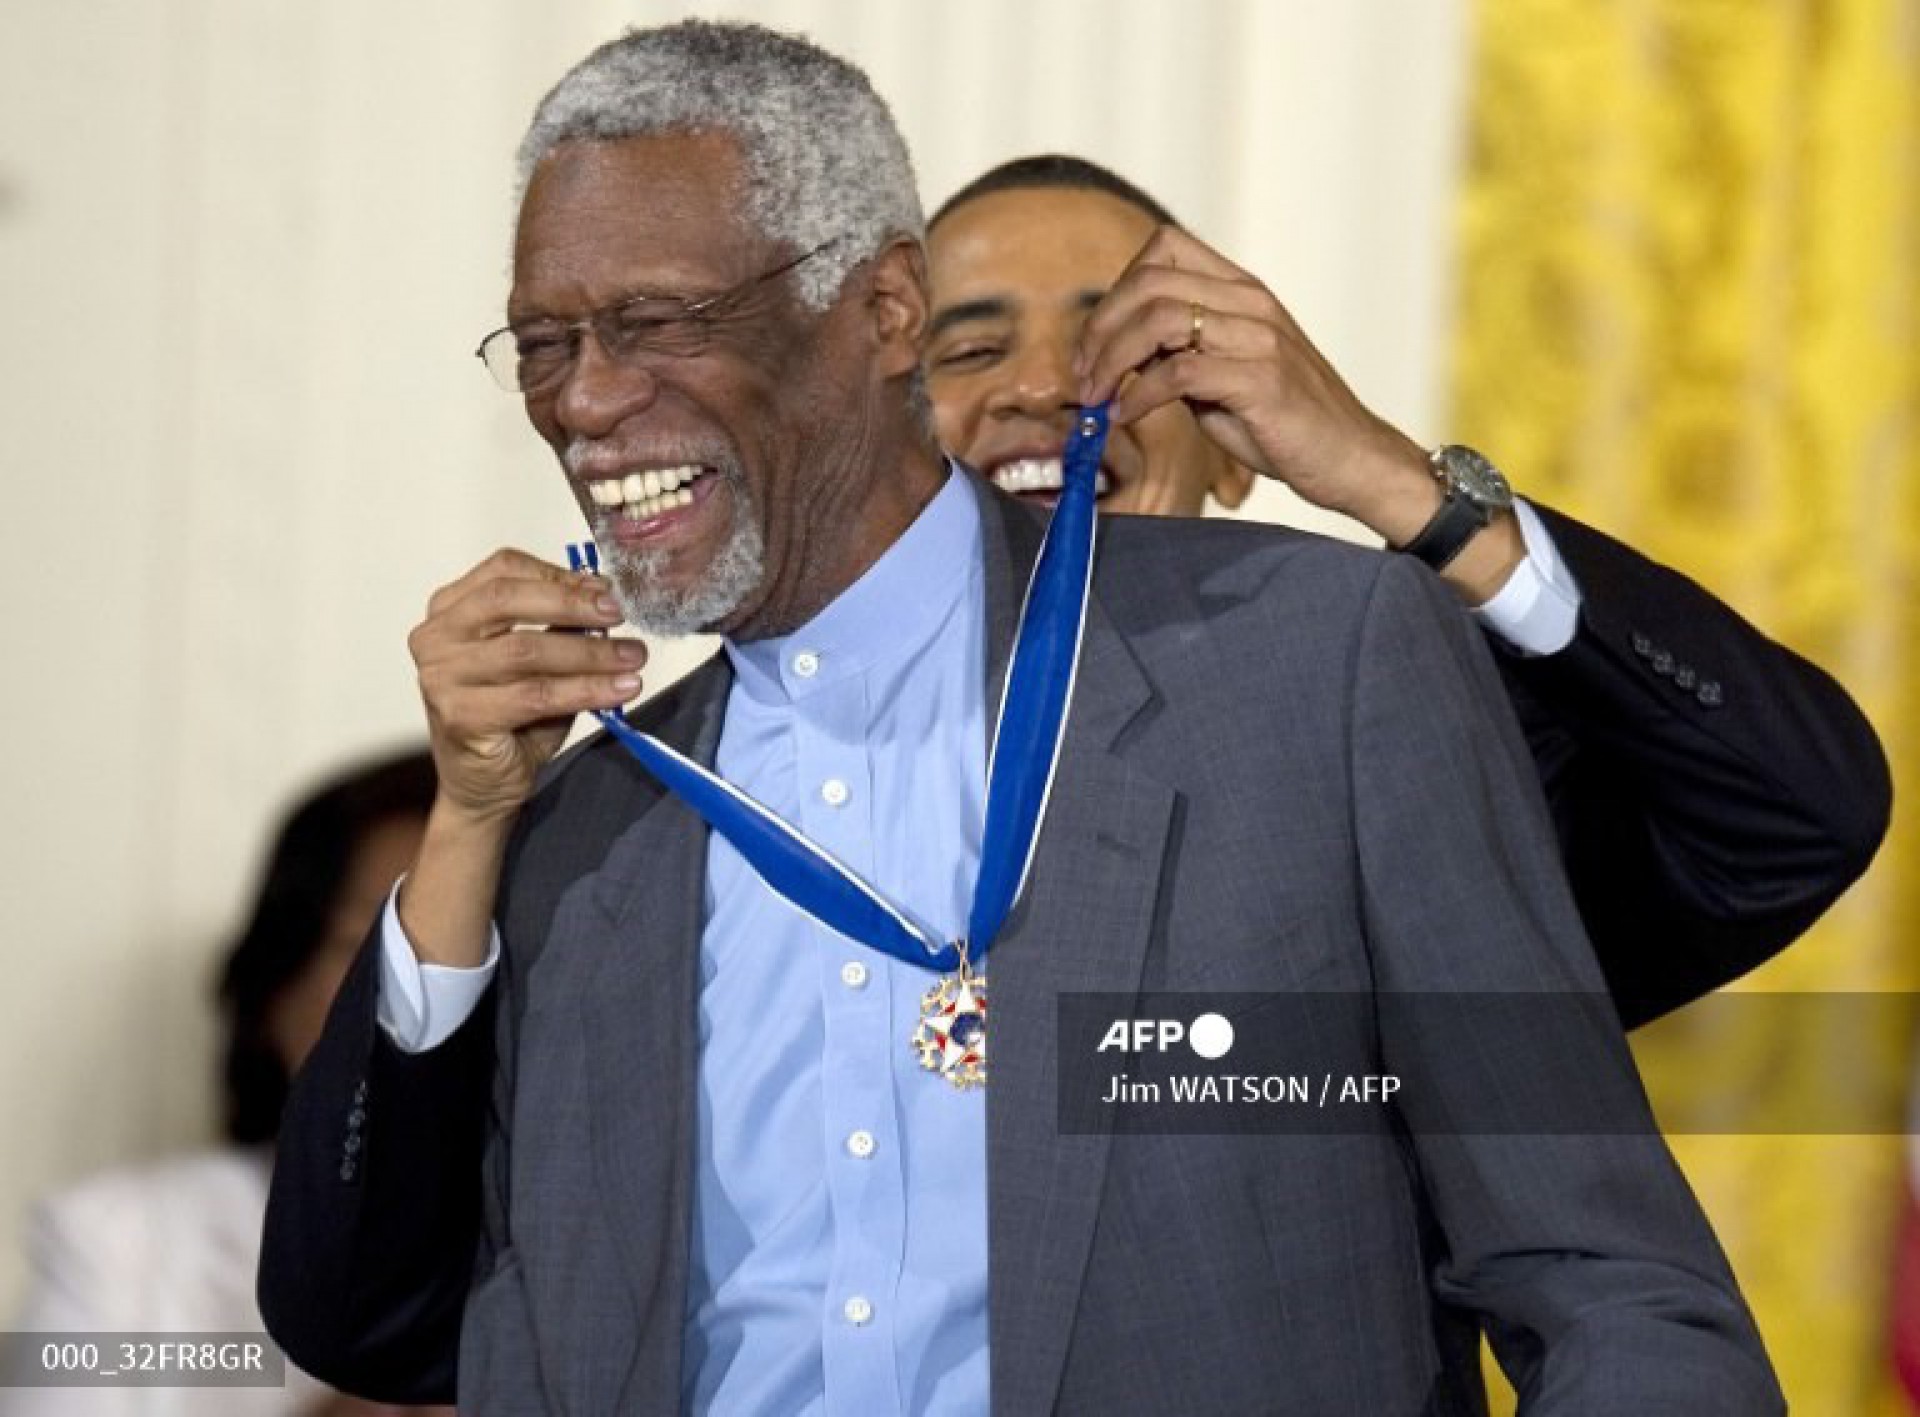 Bill Russell recebendo a Medalha Presidencial da Liberdade por Barack Obama em 2011 - JIM WATSON / AFP